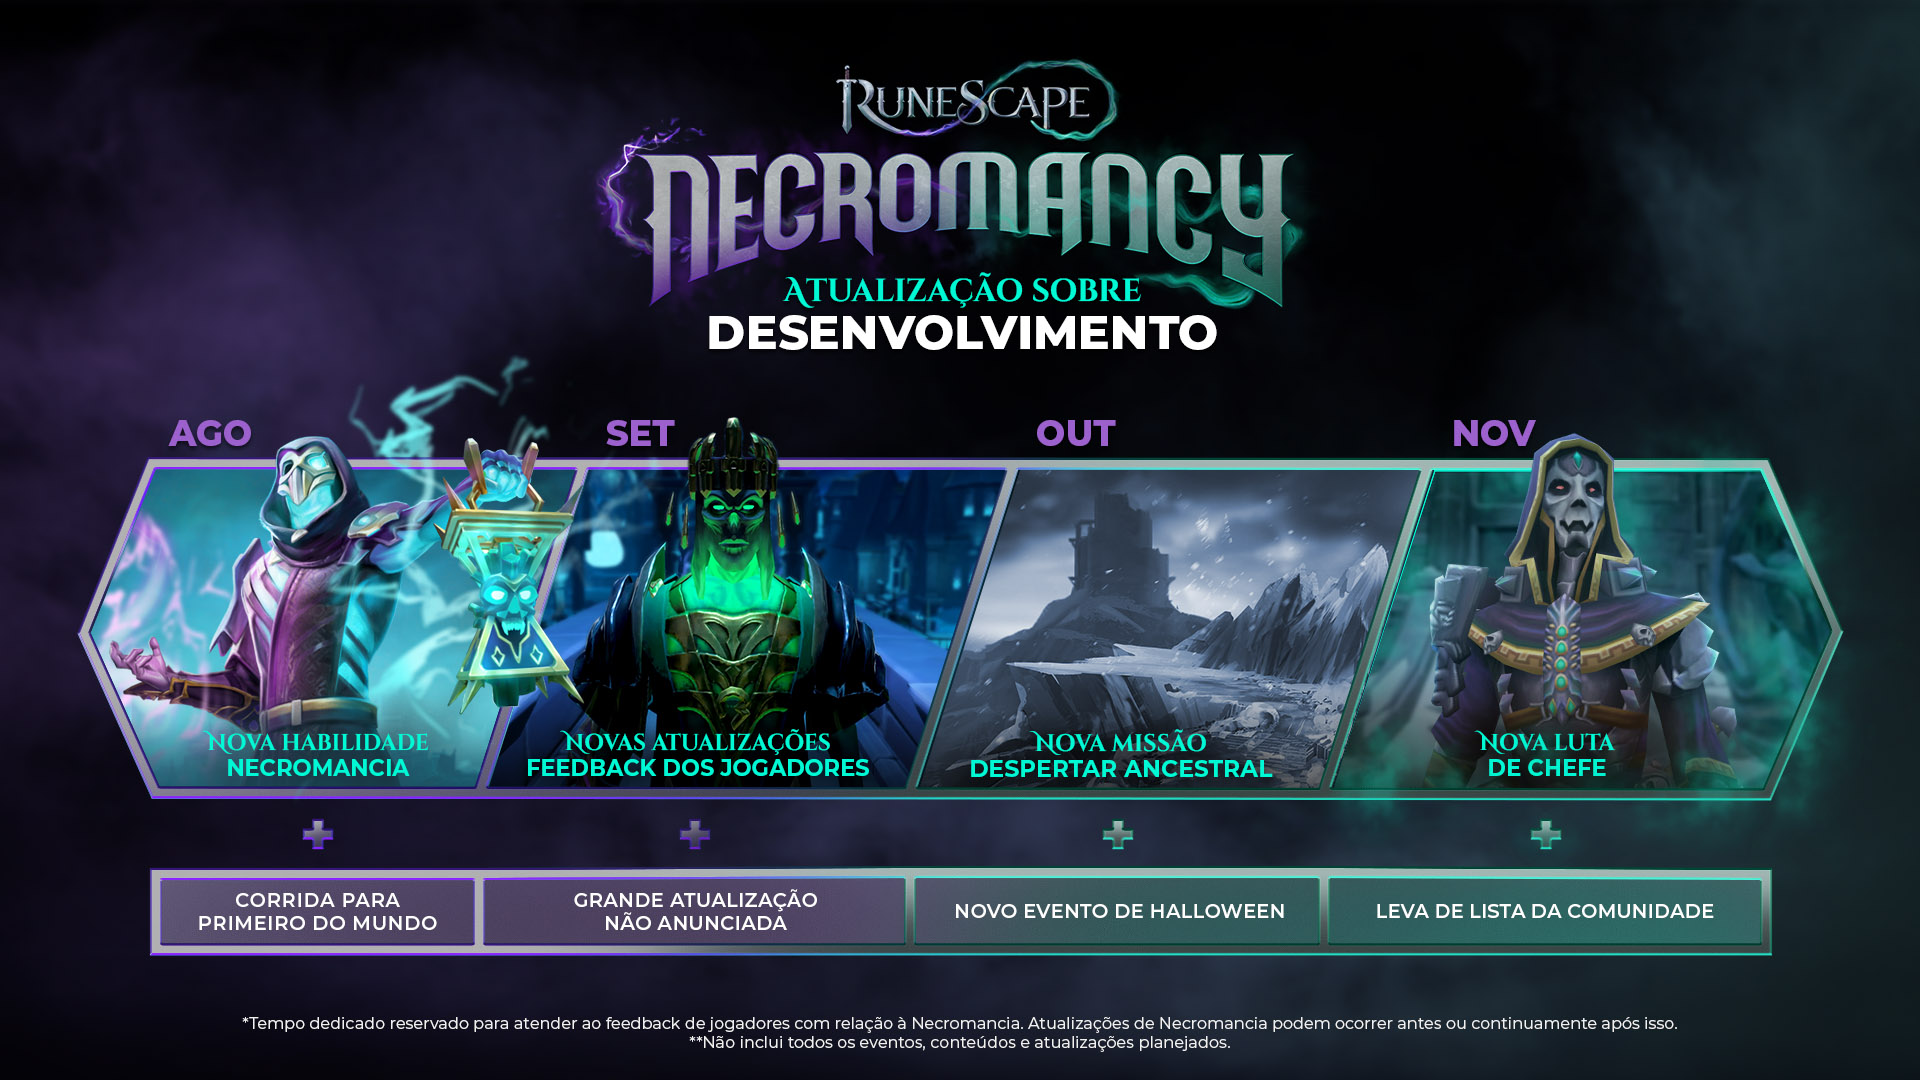 Necromancia - A jornada começa Imagem teaser